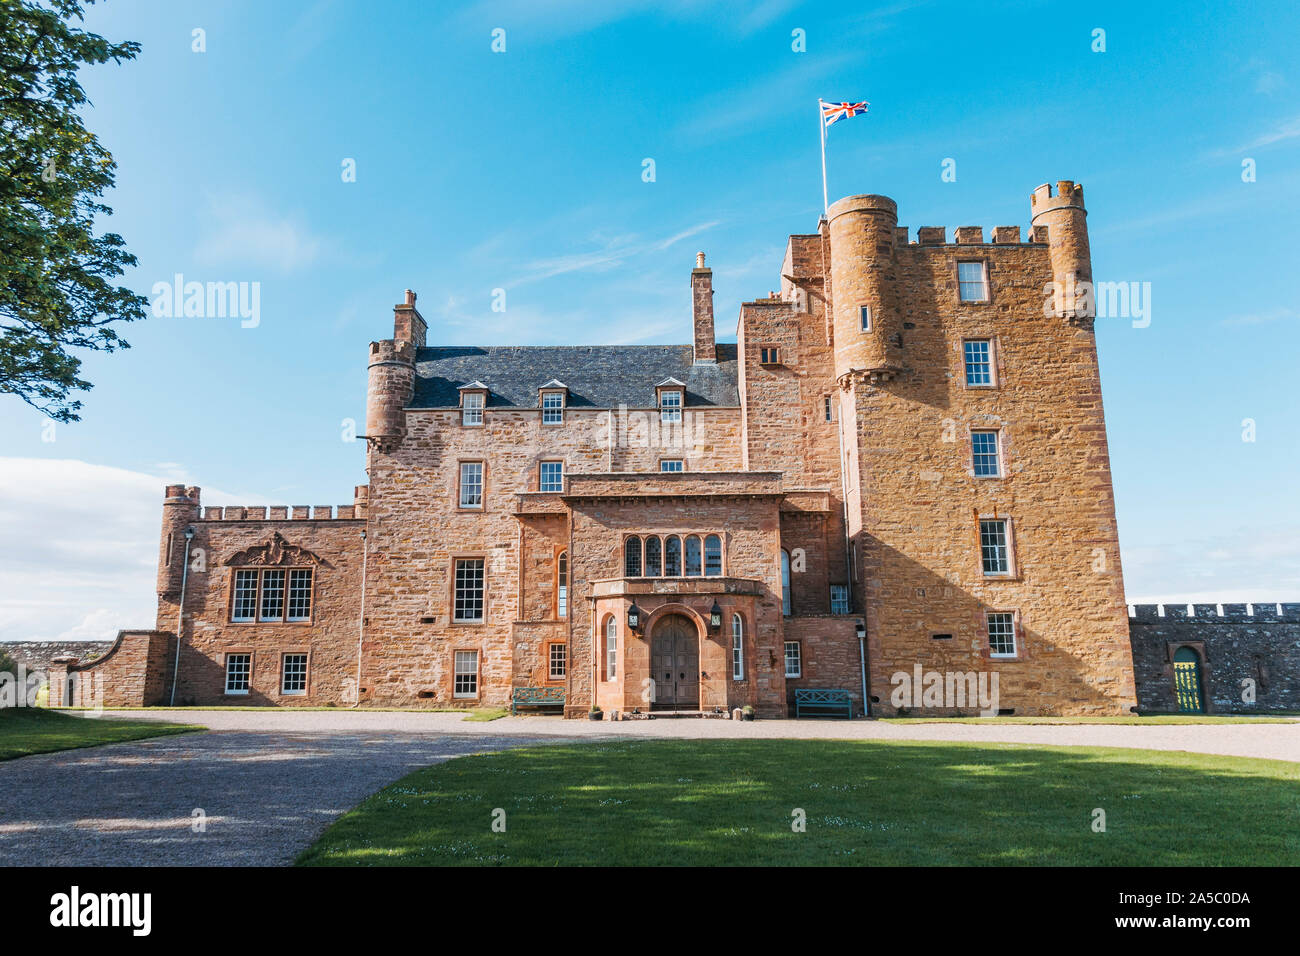 Rayons de soleil de l'après-midi a frappé le Château de Mey, un château magnifiquement restauré près de Thurso dans le nord de l'Ecosse, Grande-Bretagne Banque D'Images